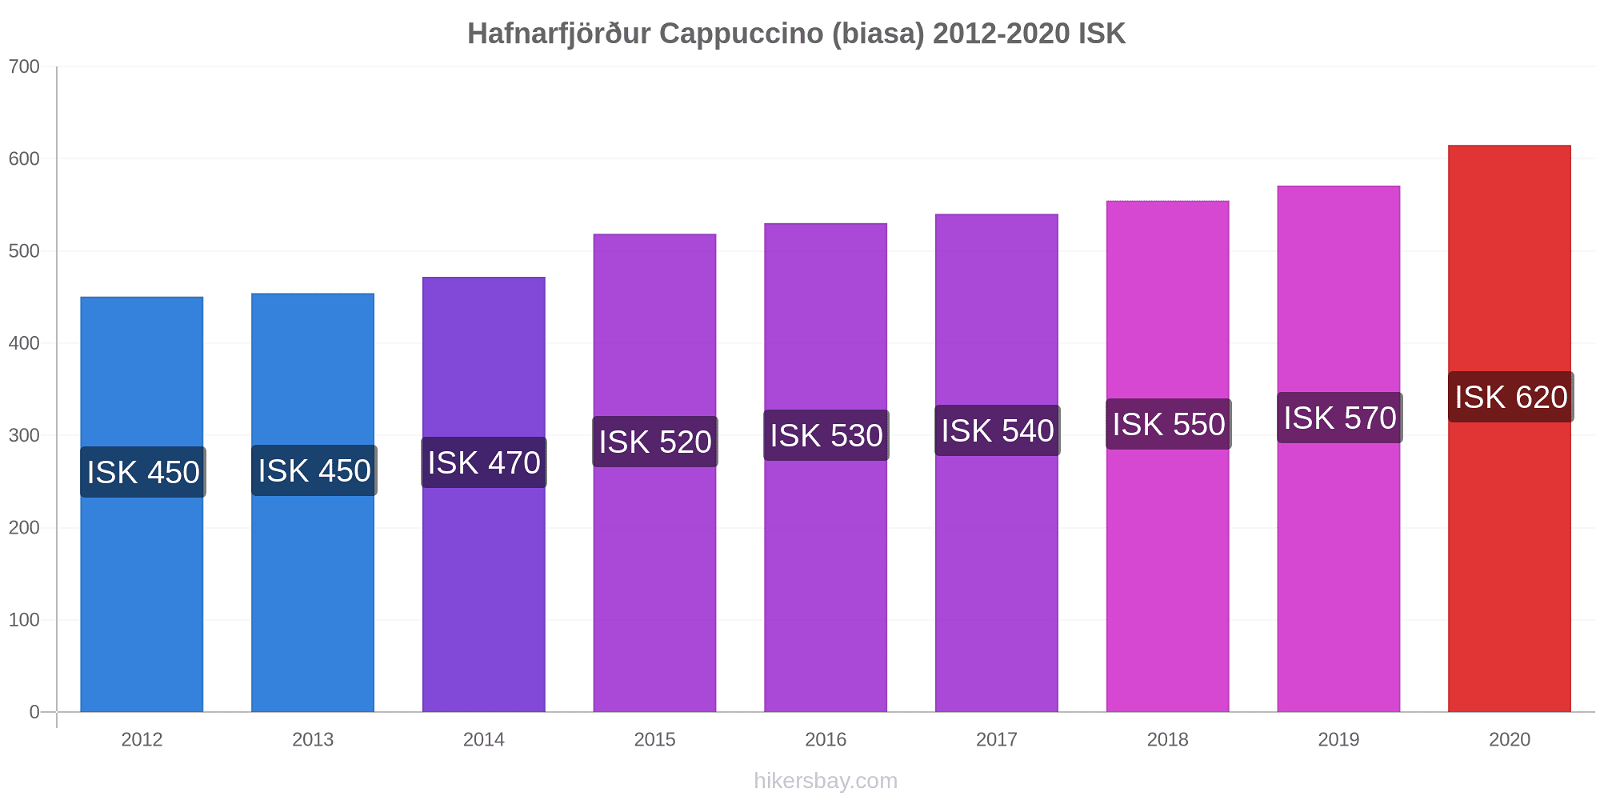 Hafnarfjörður perubahan harga Cappuccino (biasa) hikersbay.com